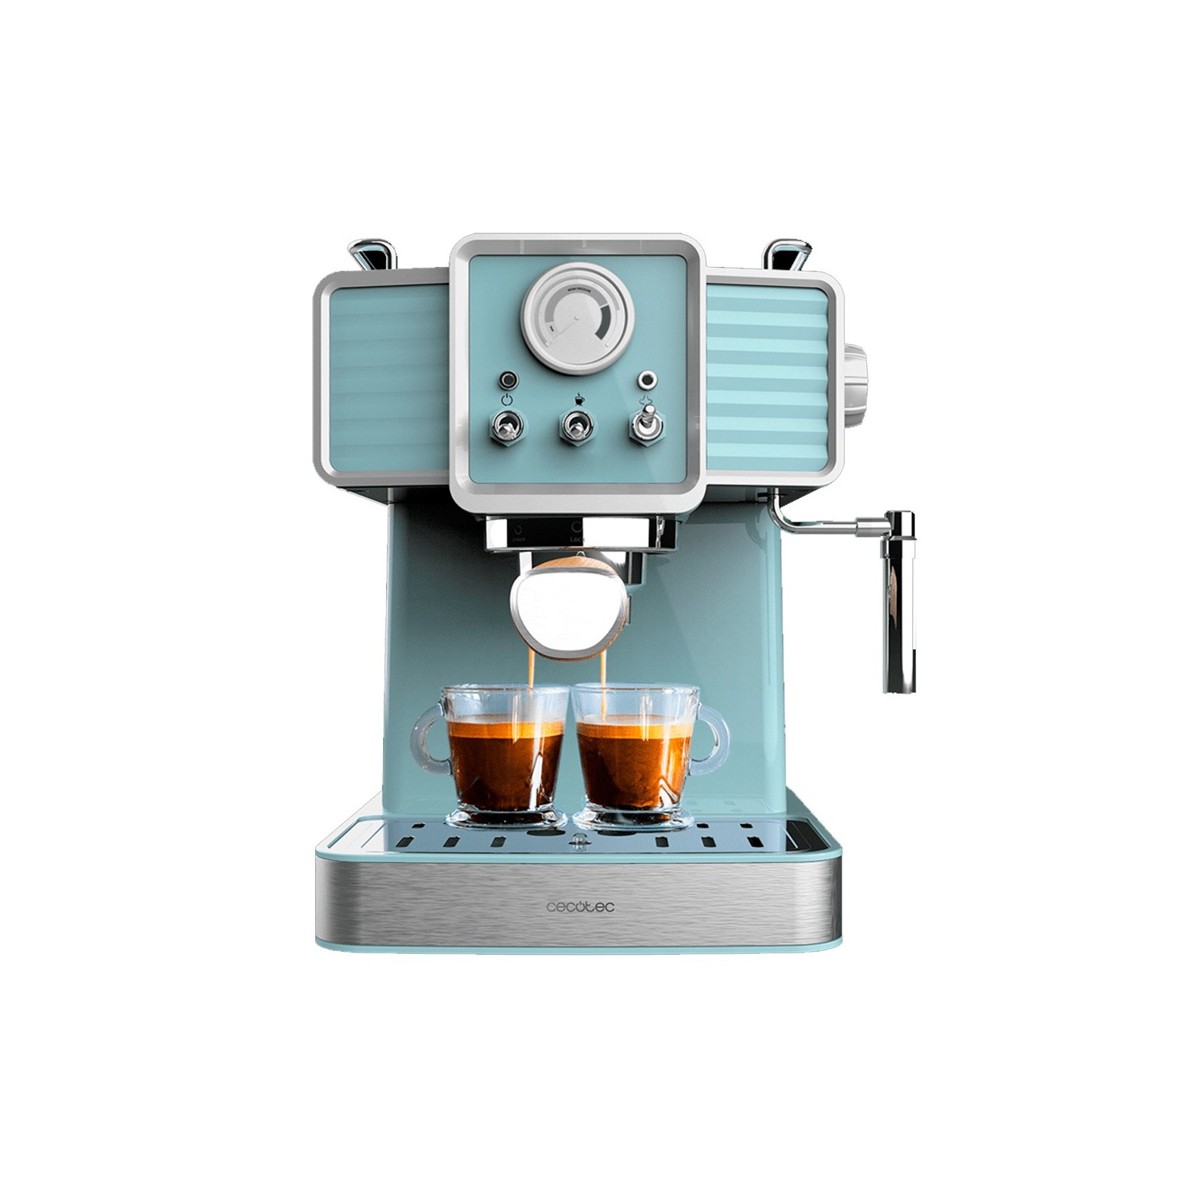 130,68 € - Cafetera Express Cecotec Espresso 20 Tradicional Blue